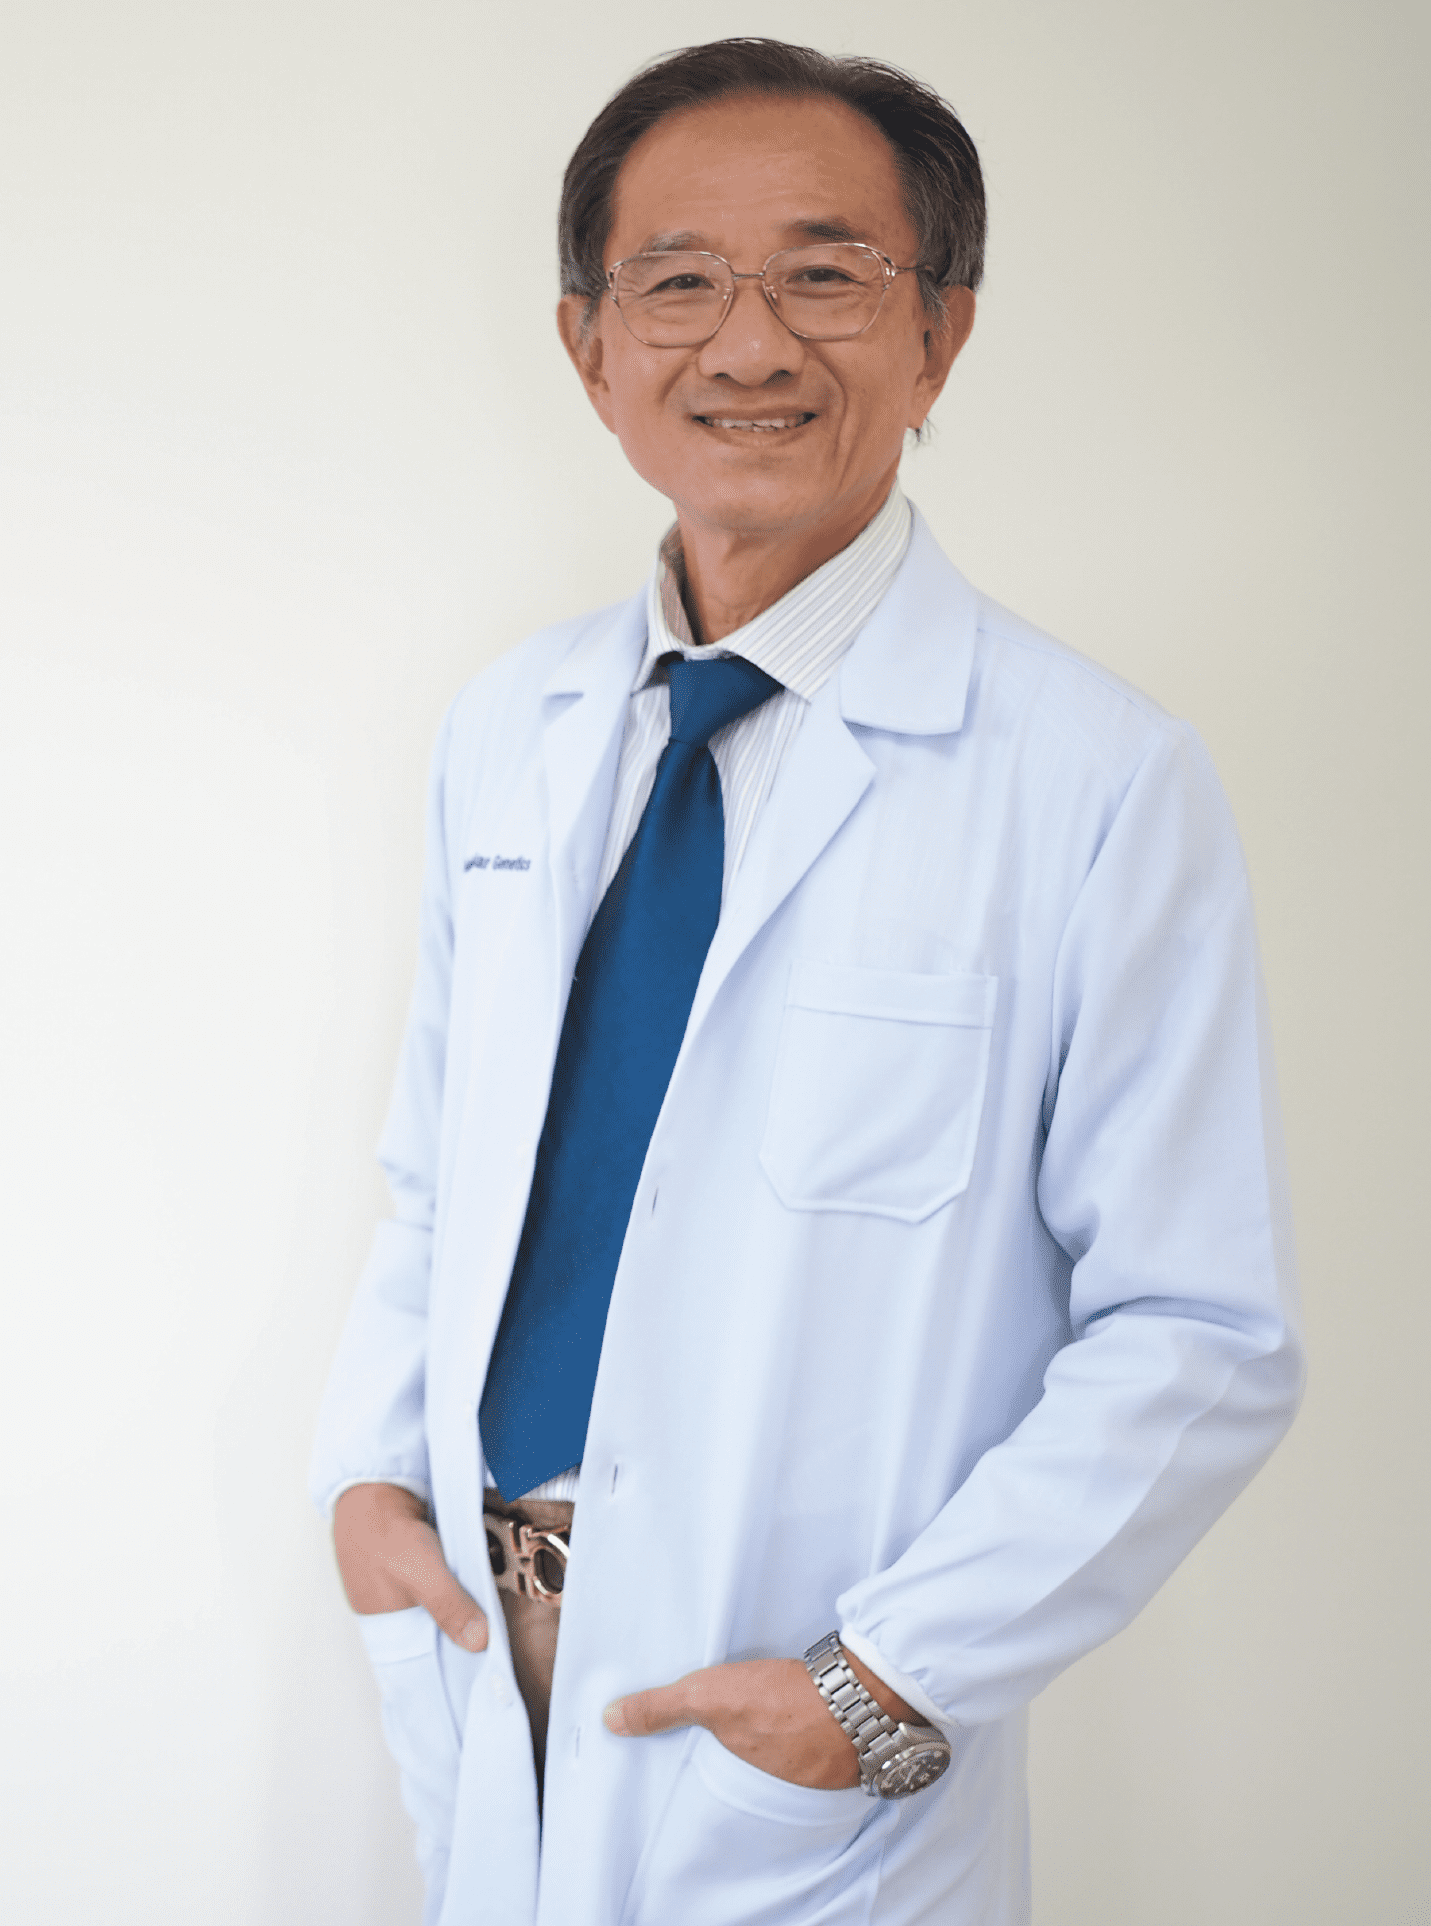 นพ.มงคลชน ฏิระวณิชย์กุล แพทย์ผู้เชี่ยวชาญด้านสูตินรีเวชชั้นนำของประเทศไทย ที่จบจากคณะแพทย์ศาสตร์ศิริราชพยาบาล